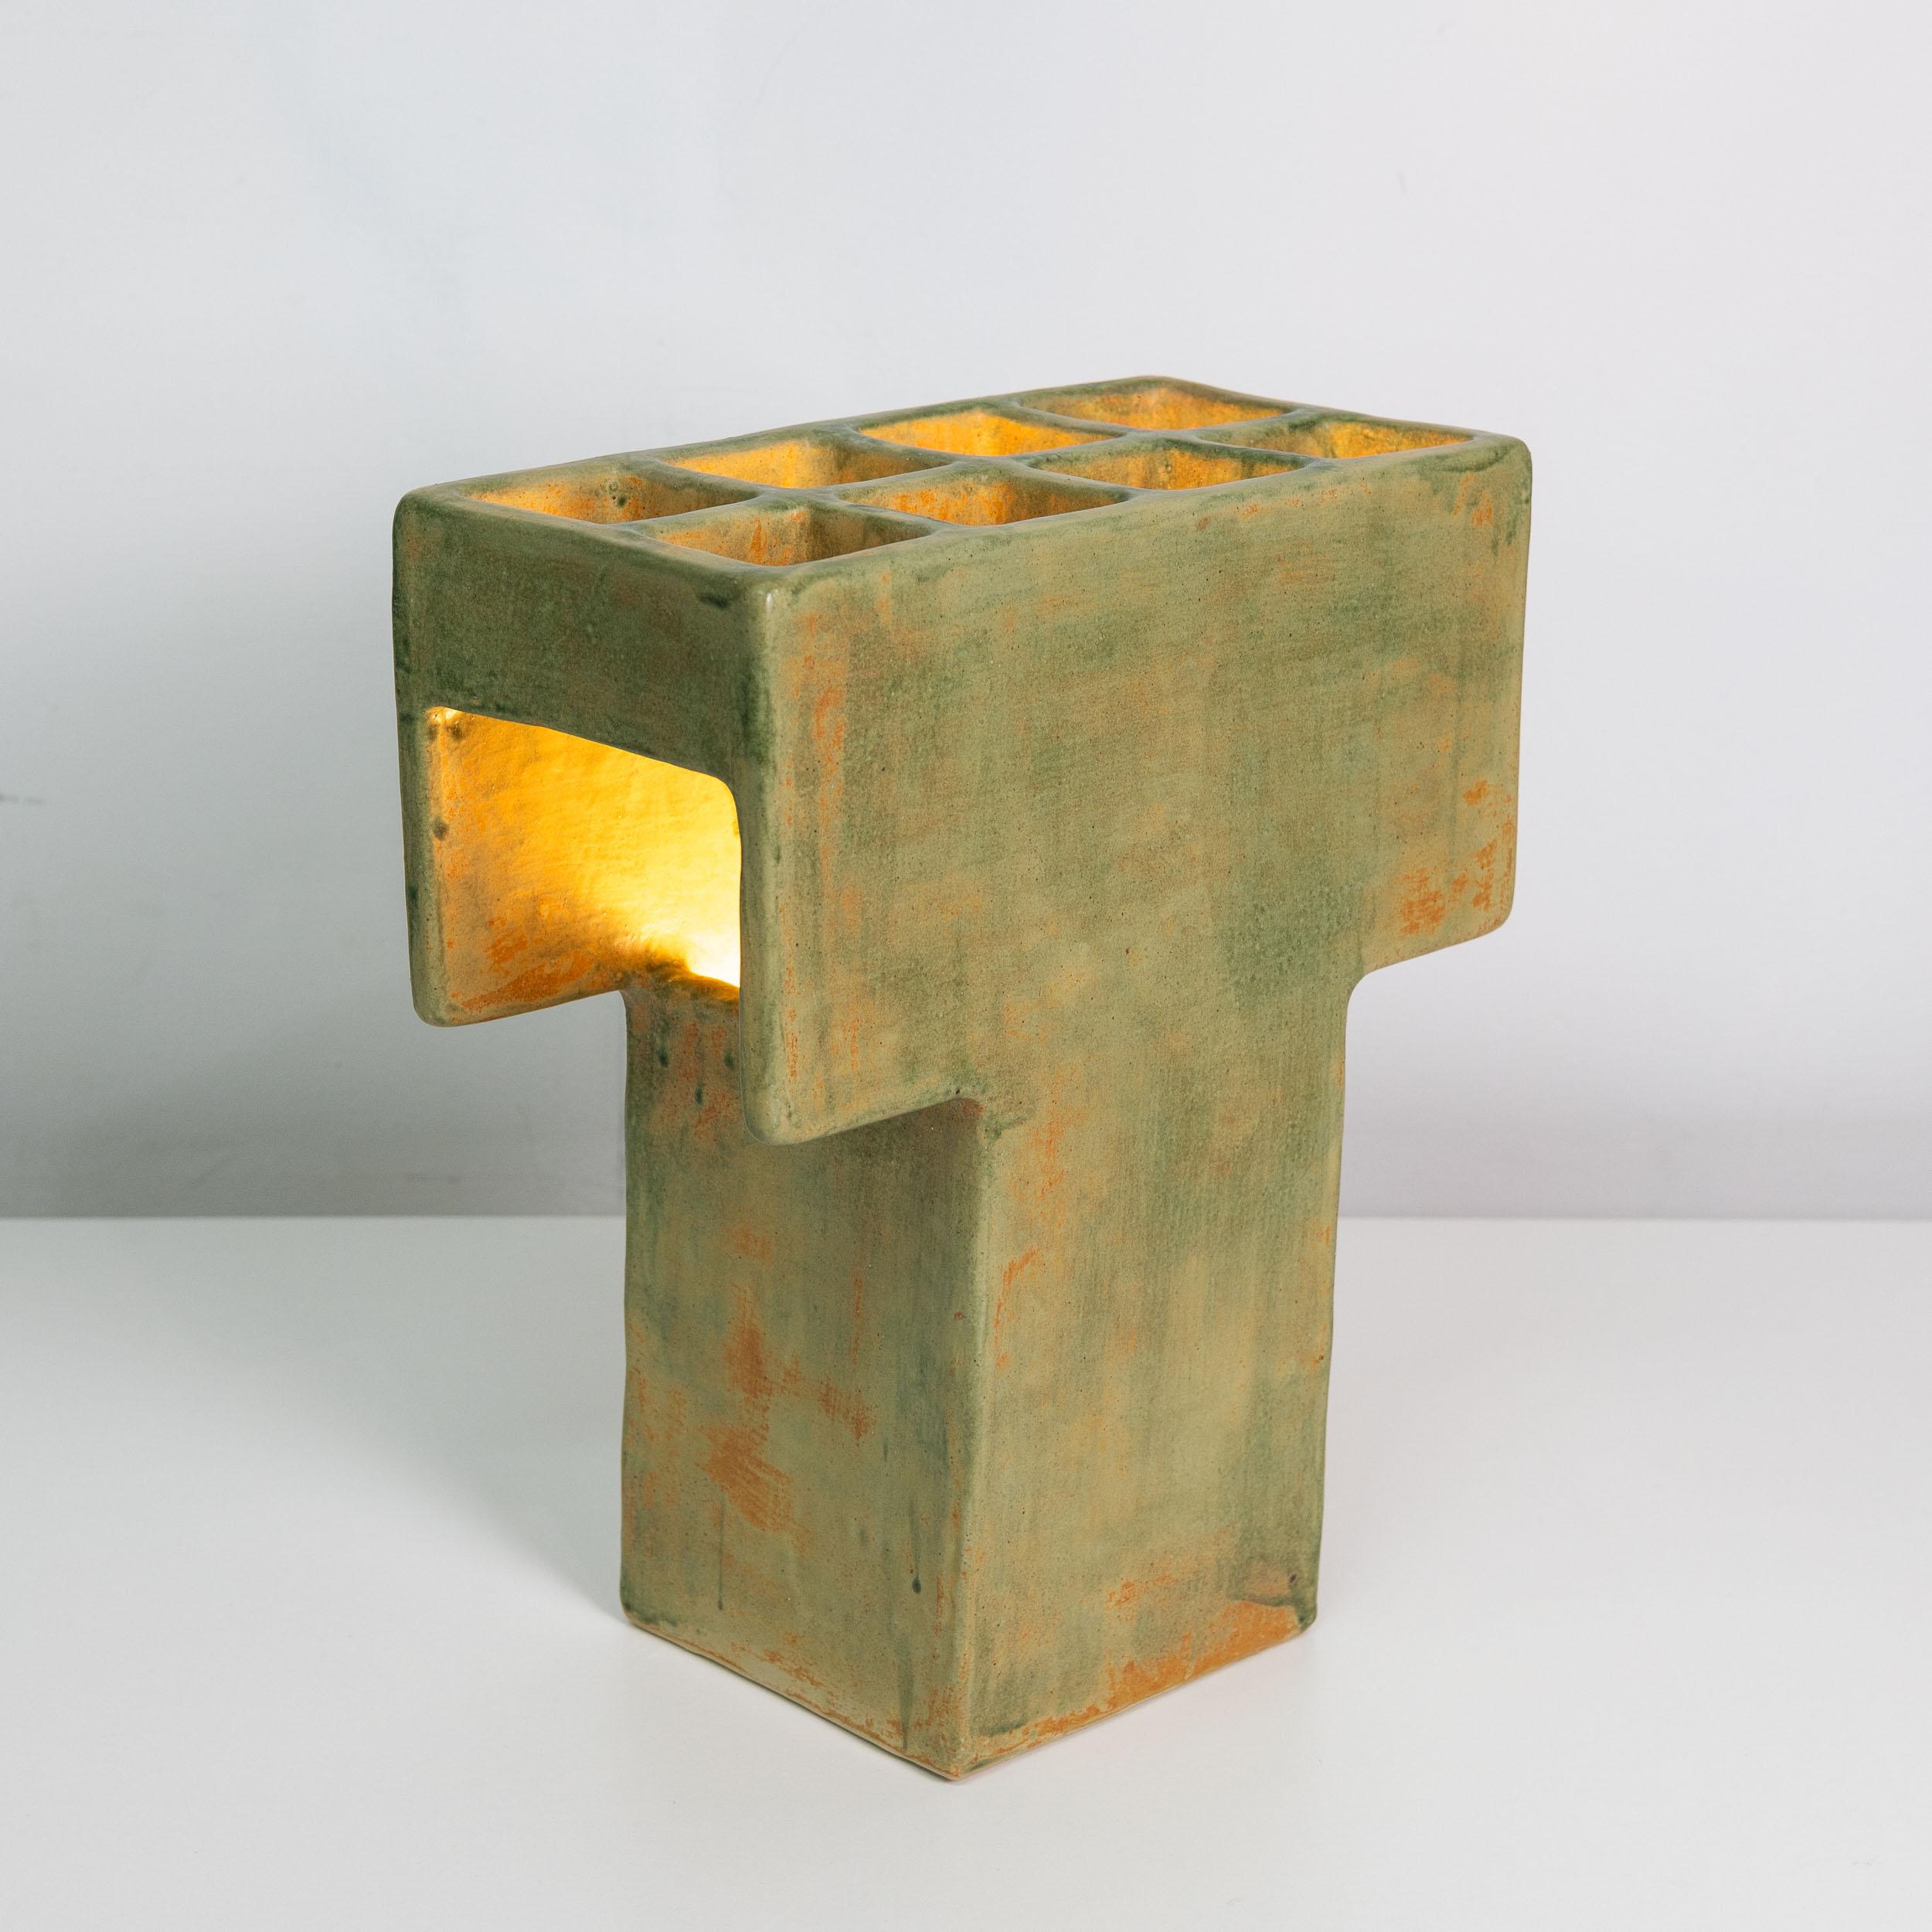 Une lampe de table en céramique unique en son genre, inspirée par l'architecture brutaliste des années 1960 et 1970. Fabriqué à la main à partir de plaques d'argile et recouvert d'une glaçure subtilement texturée. 

Lampe à poser Mr. T par Luft